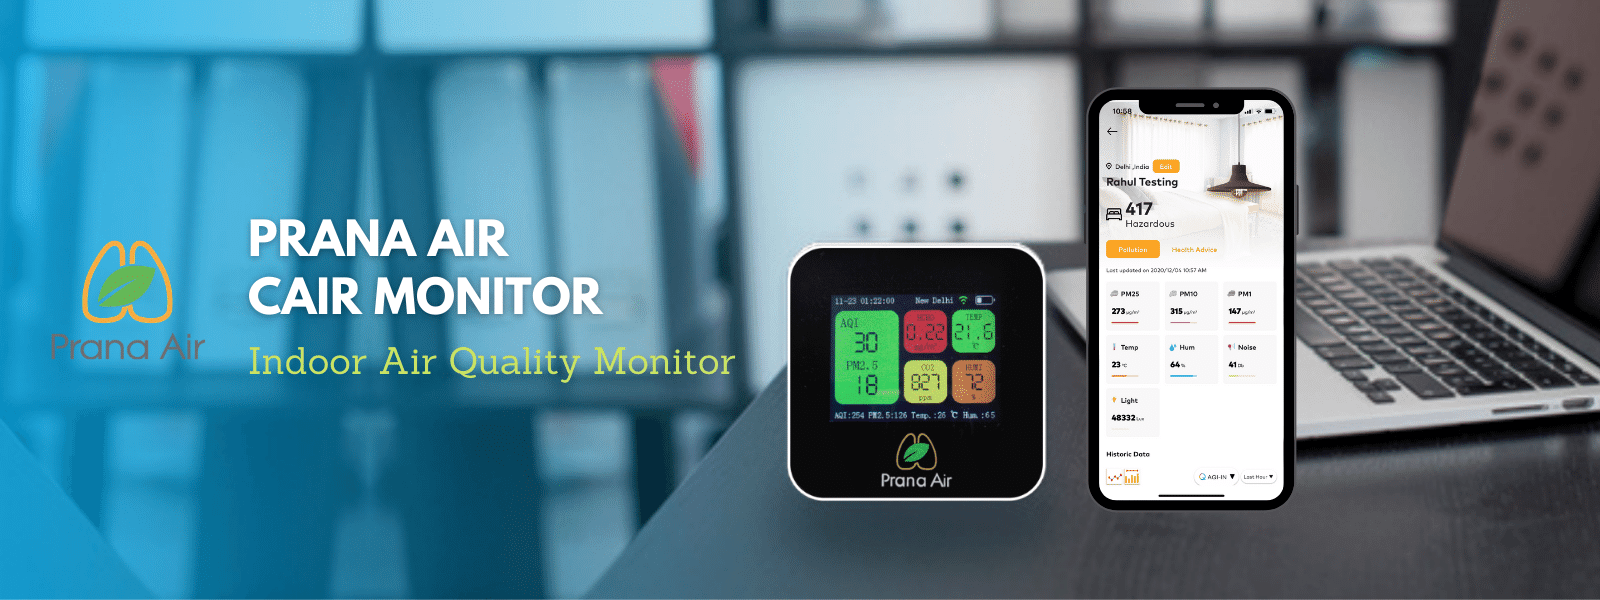 monitor prana de calidad del aire